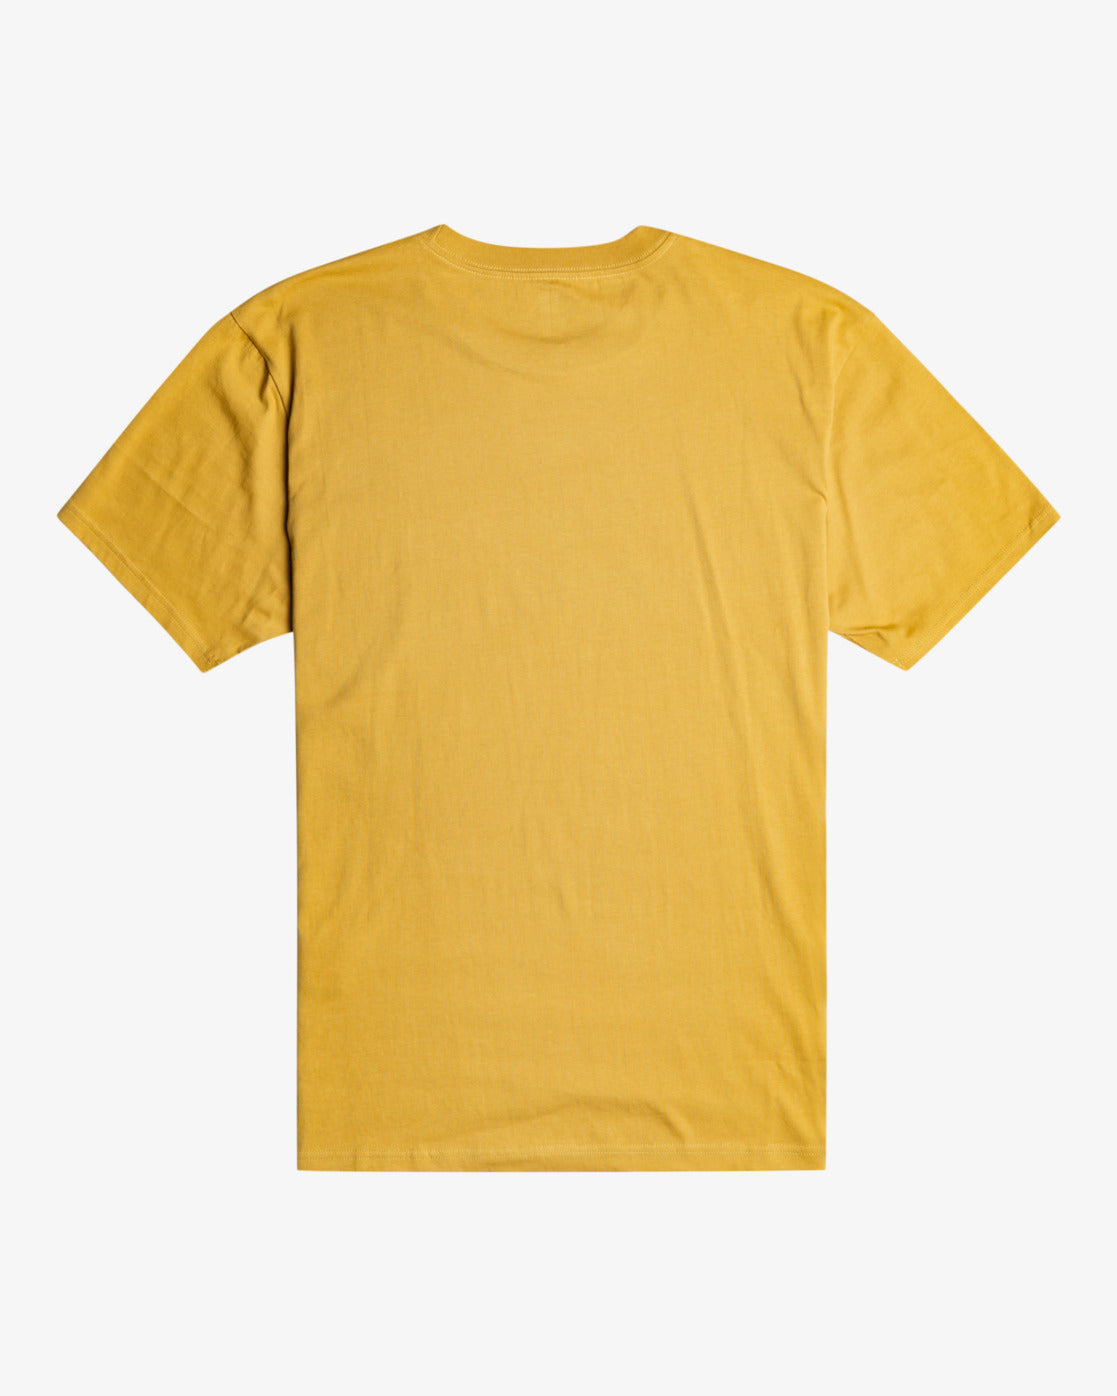 Billabong Team Wave T-Shirt in Gold